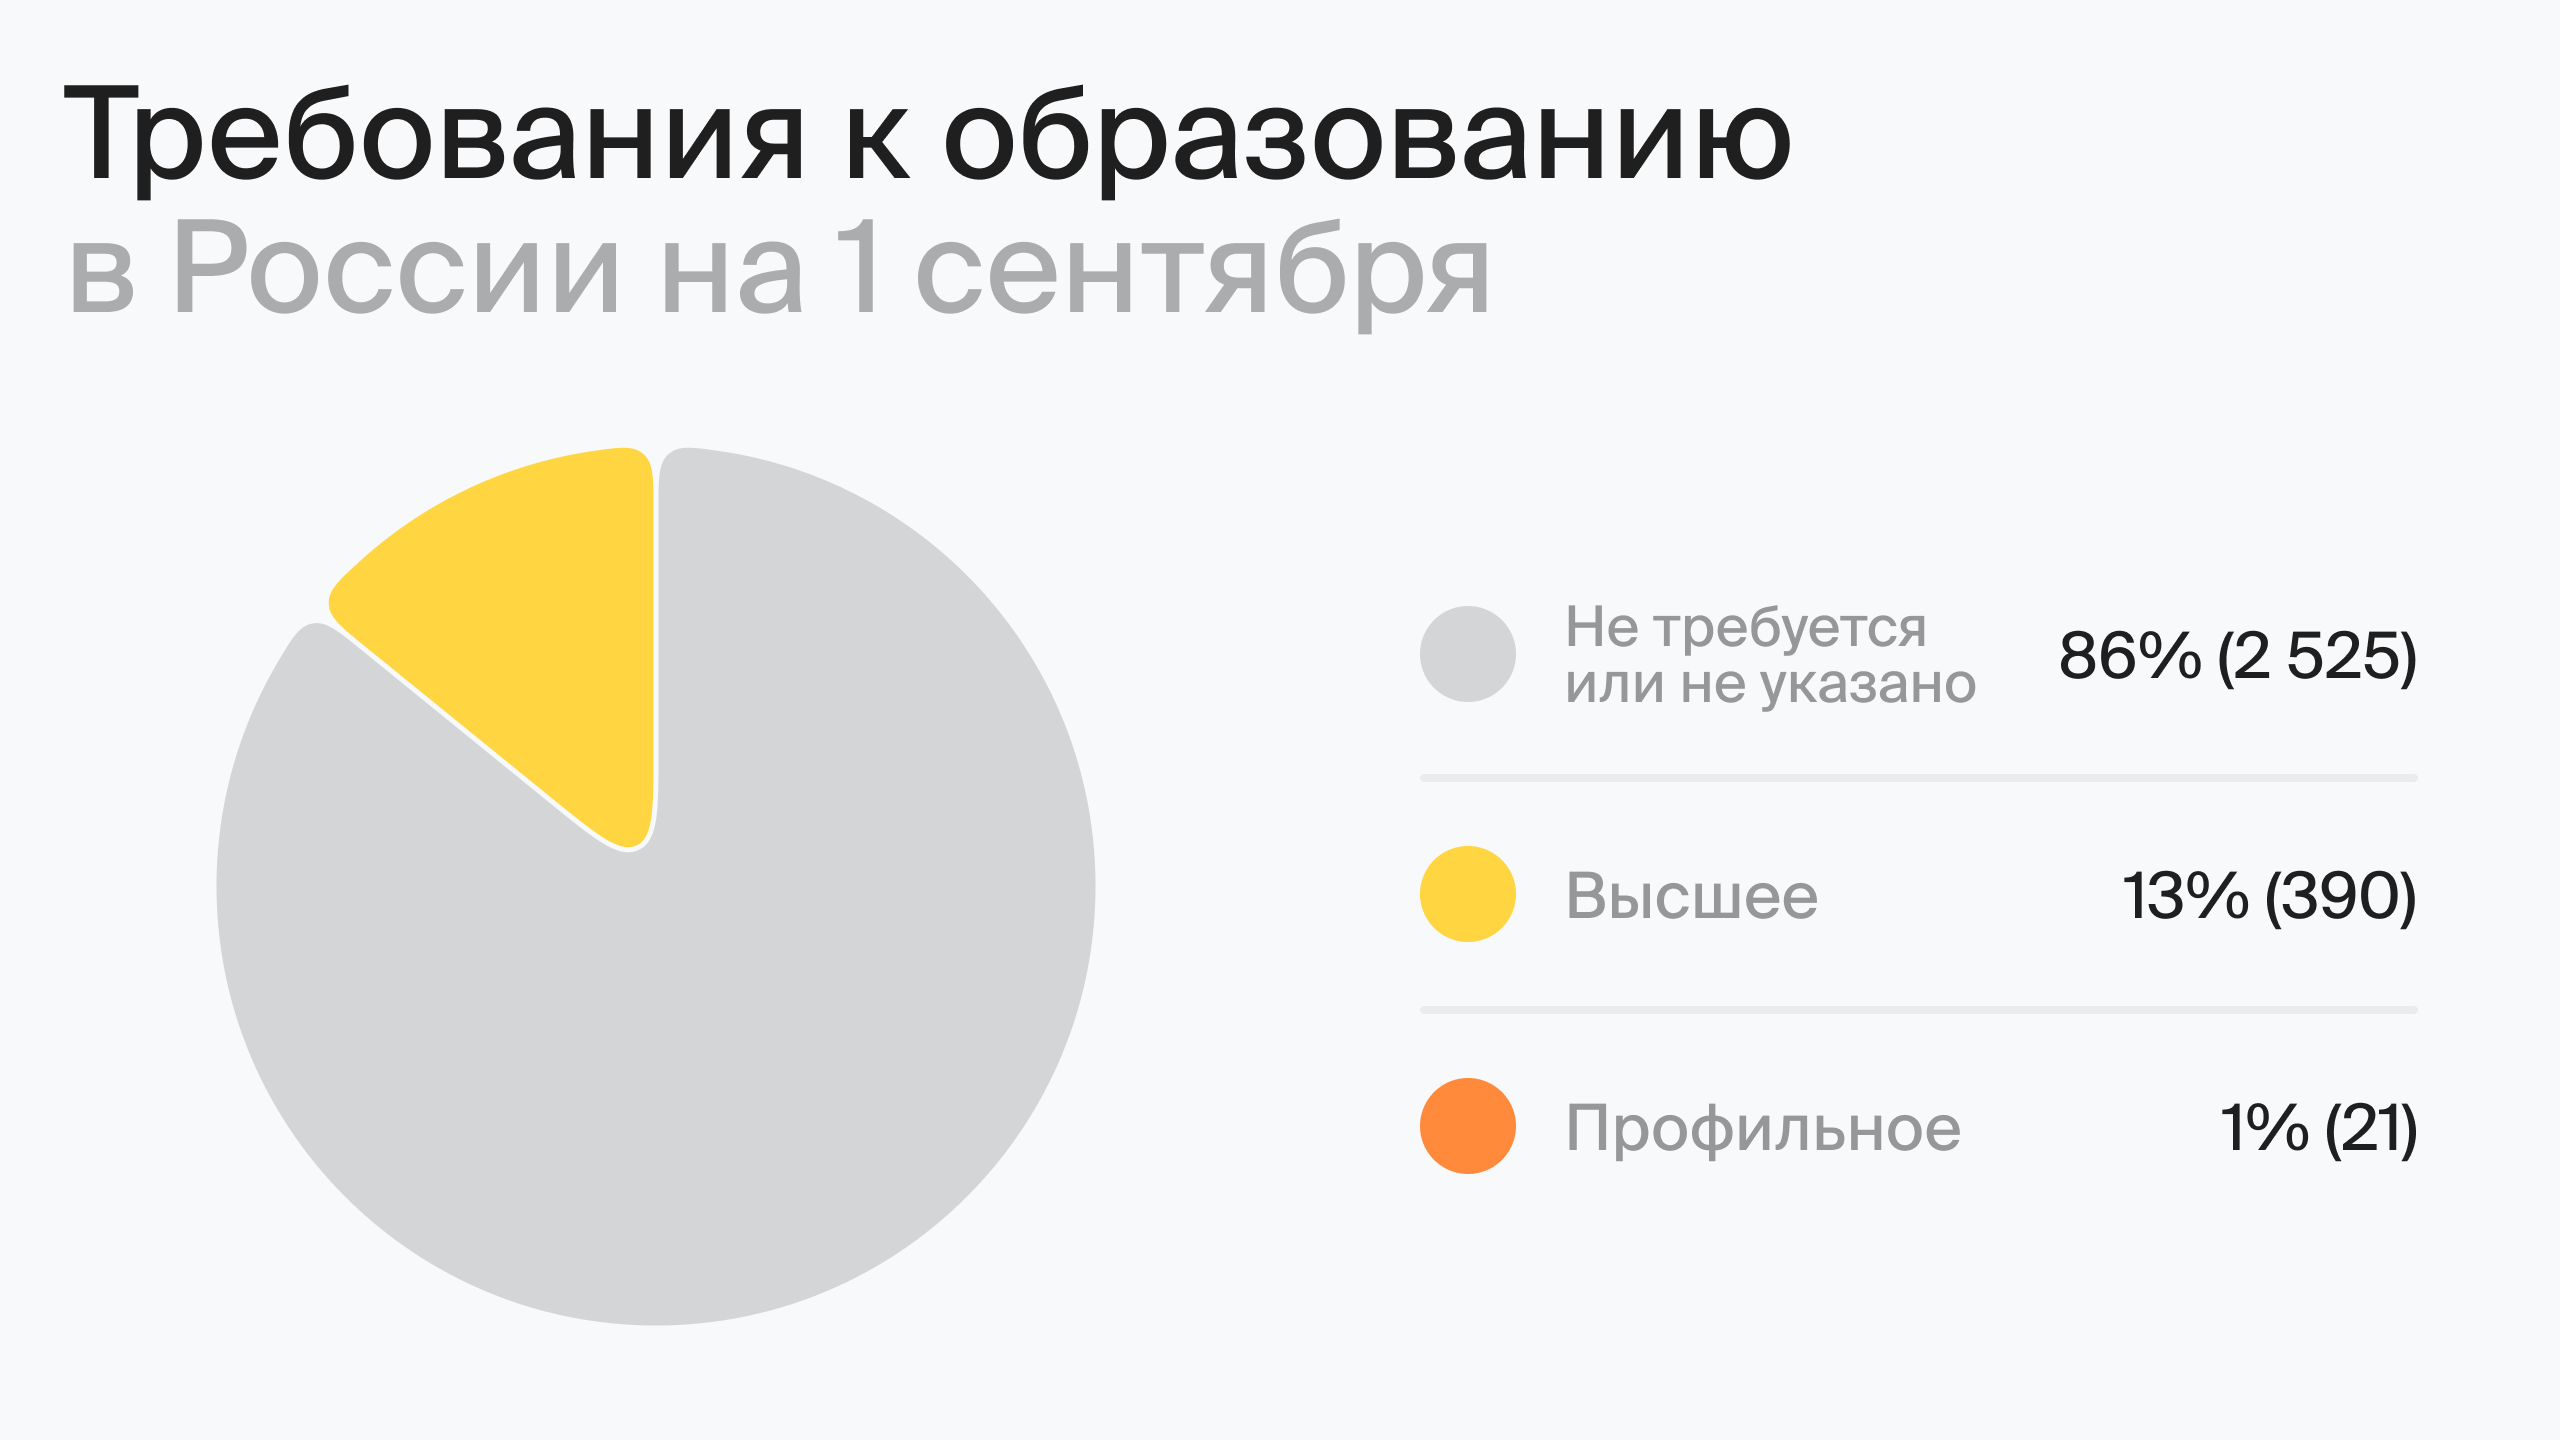 Требования к образованию в России на 1 августа (по данным hh.ru)